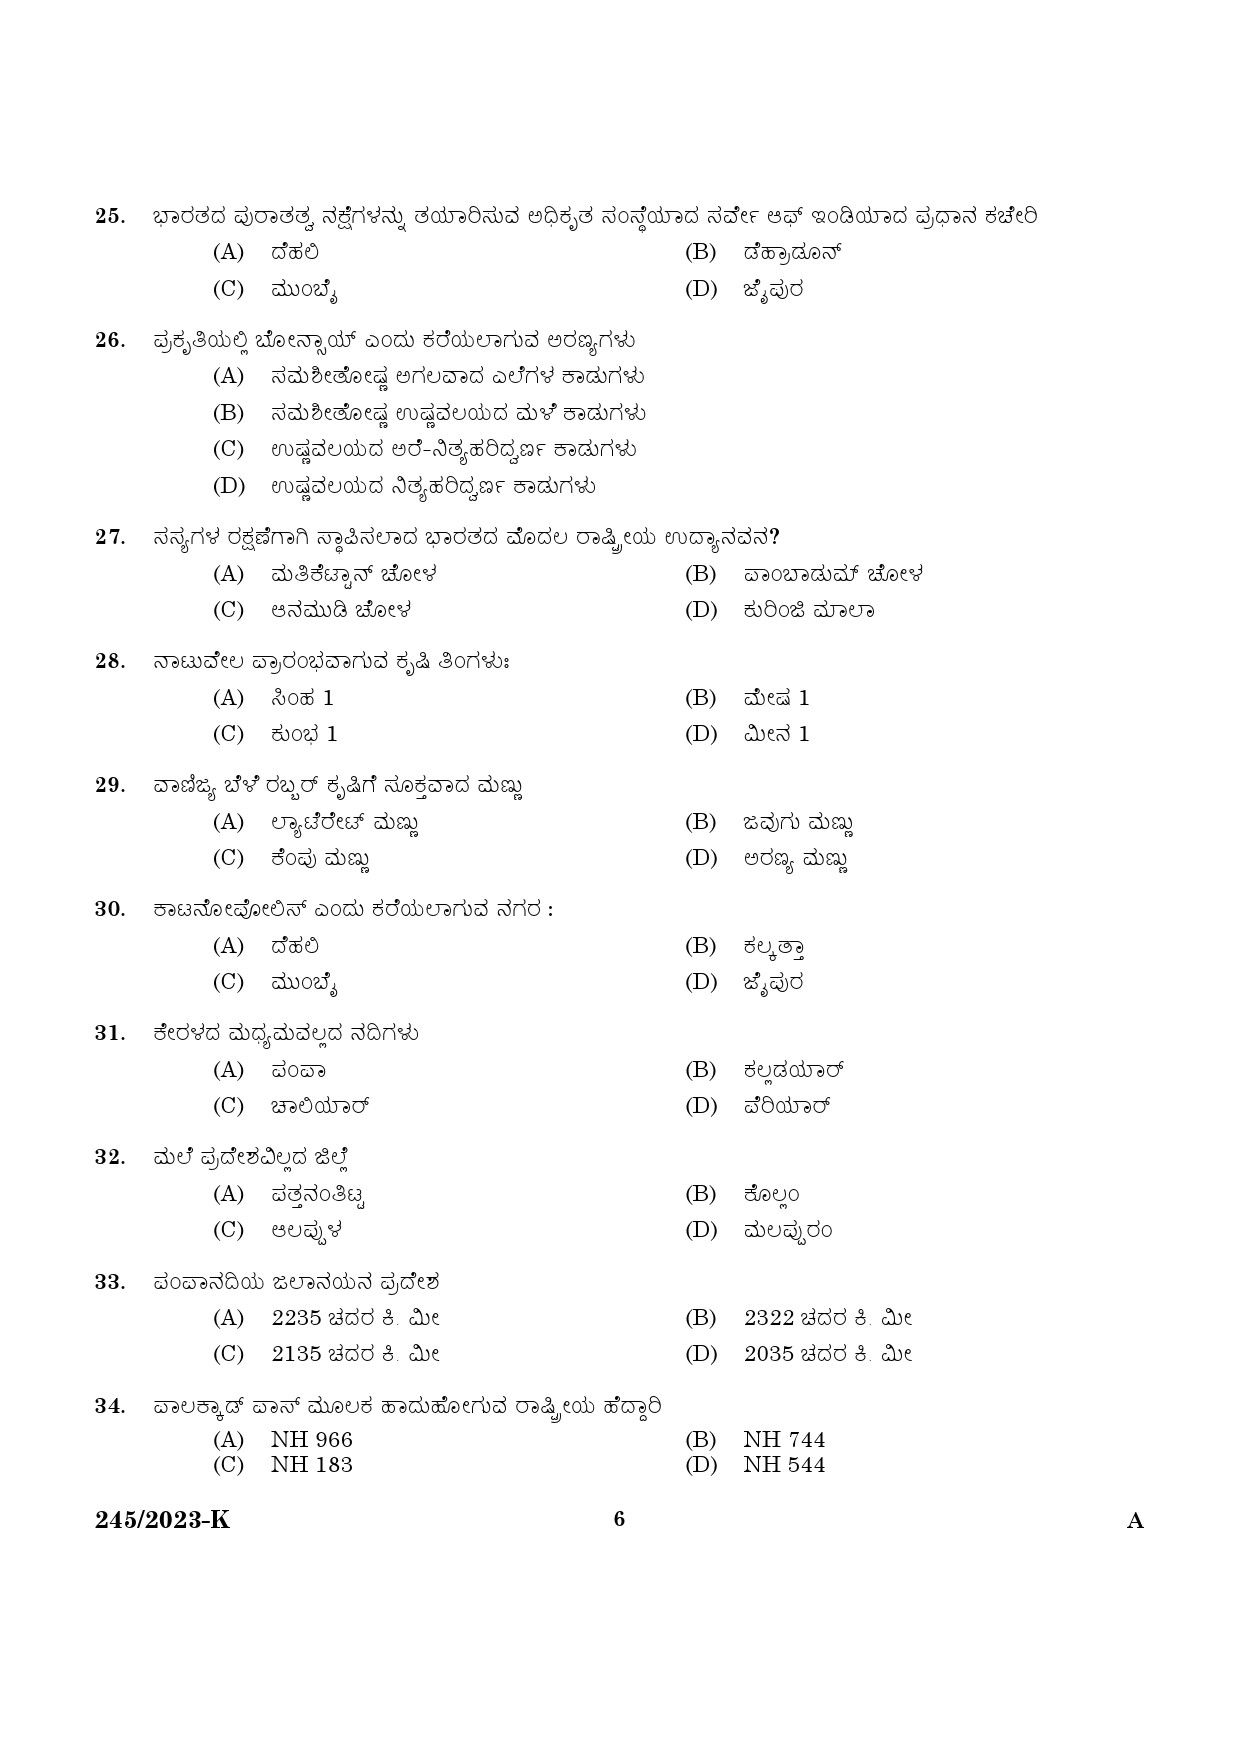 KPSC LGS Kannada Exam 2023 Code 2452023 K 4